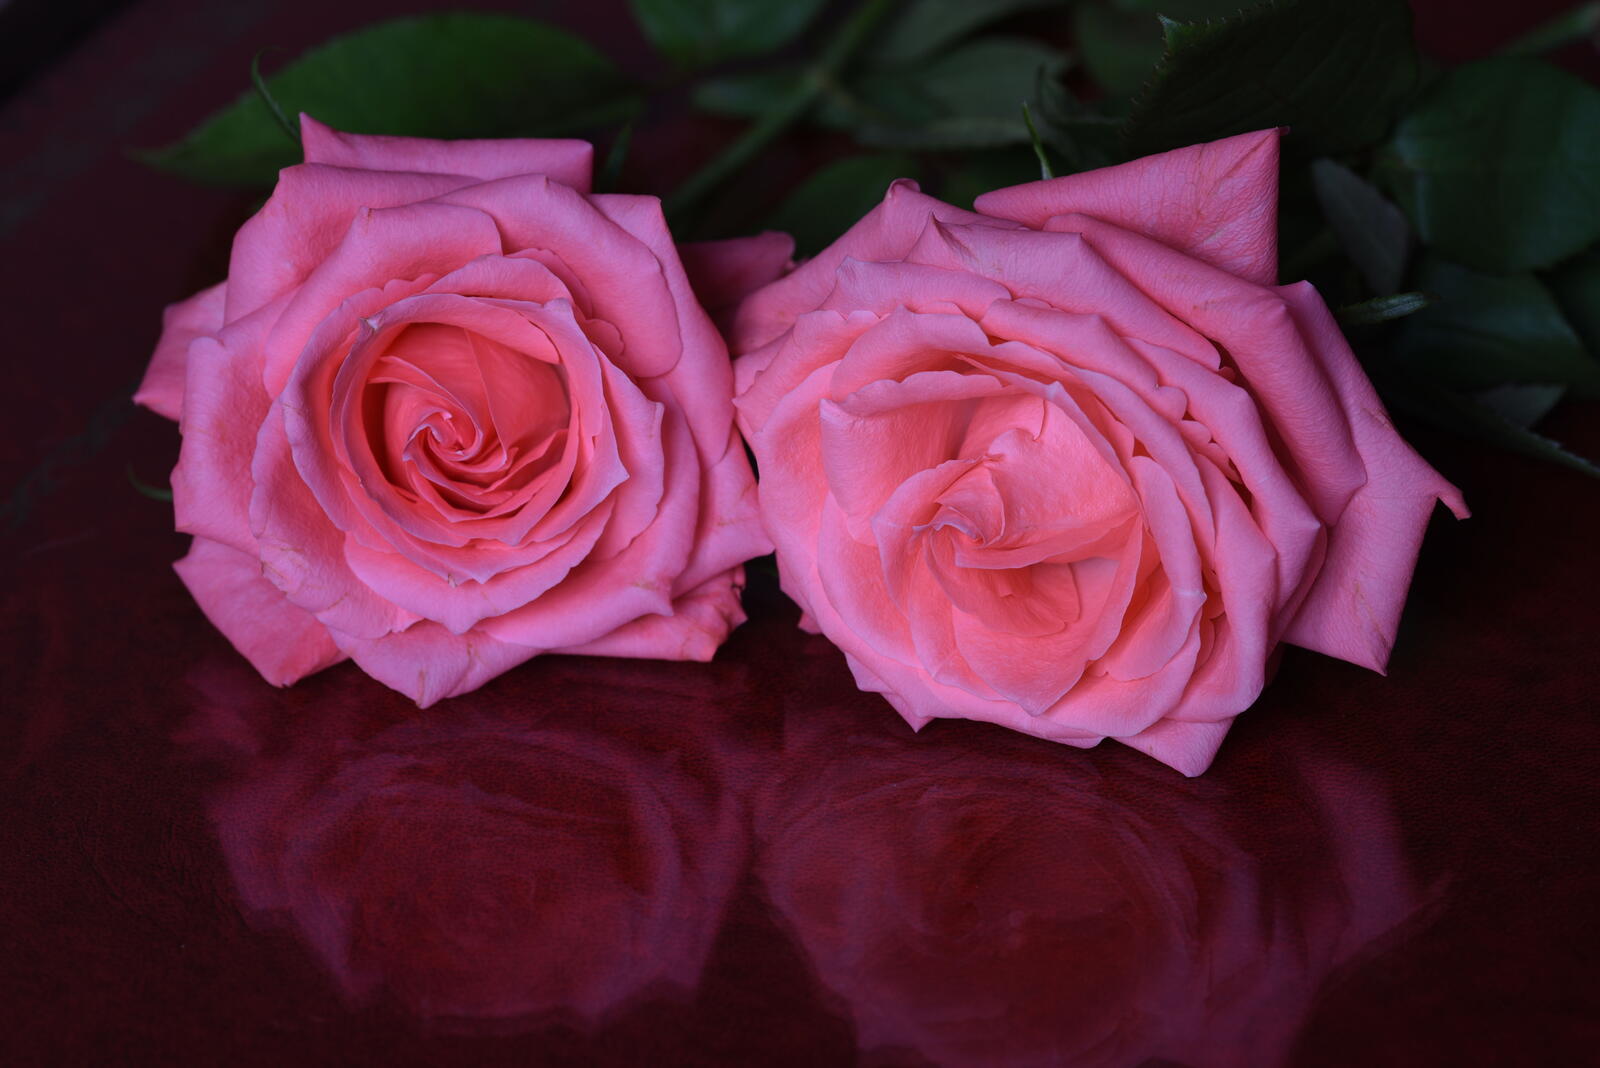 Обои цветы розы флора на рабочий стол